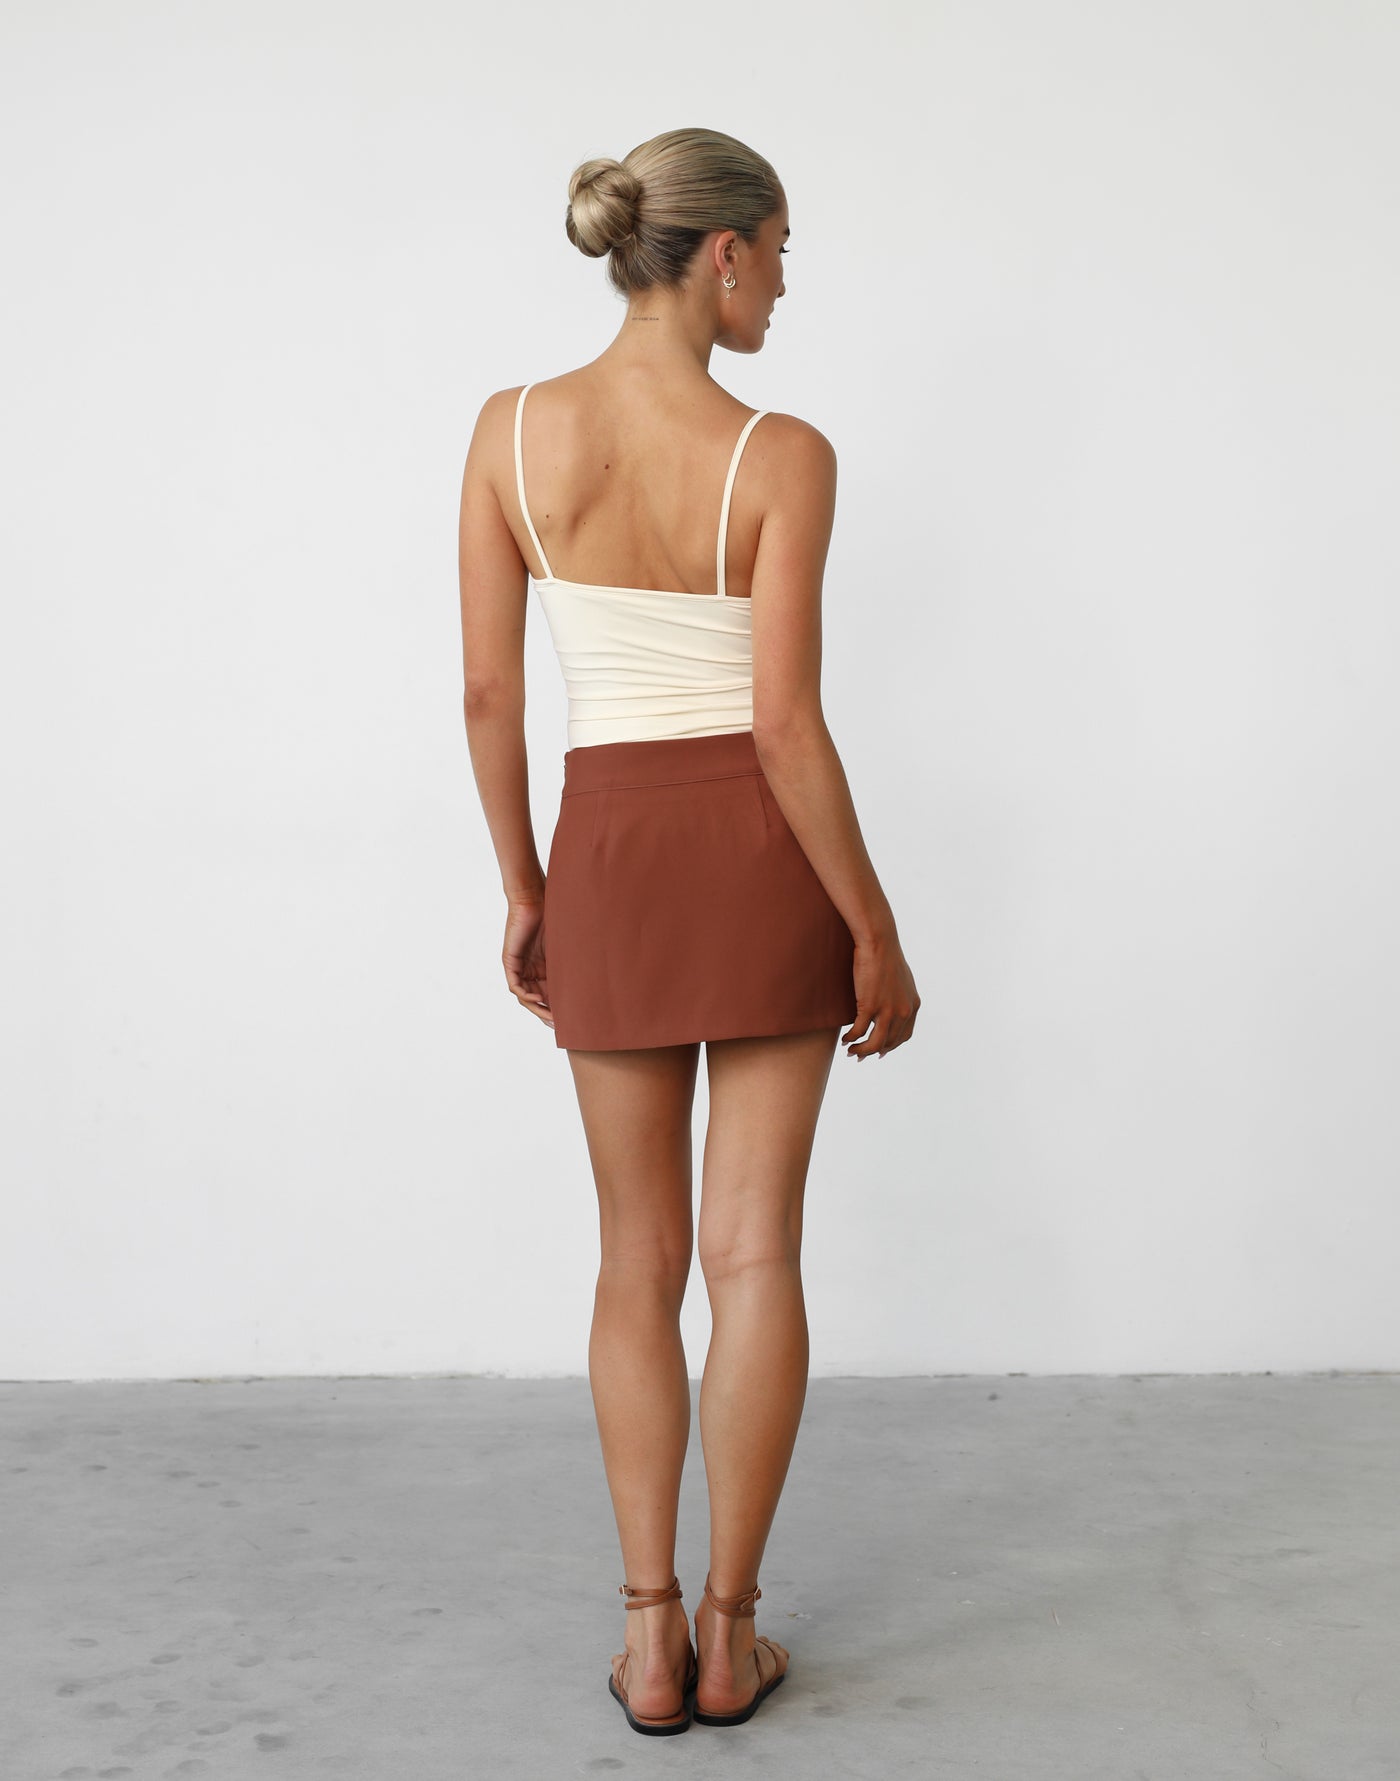 Leia Bodysuit (Cream) - Bodycon Thin Strap Bodysuit - Women's Top - Charcoal Clothing